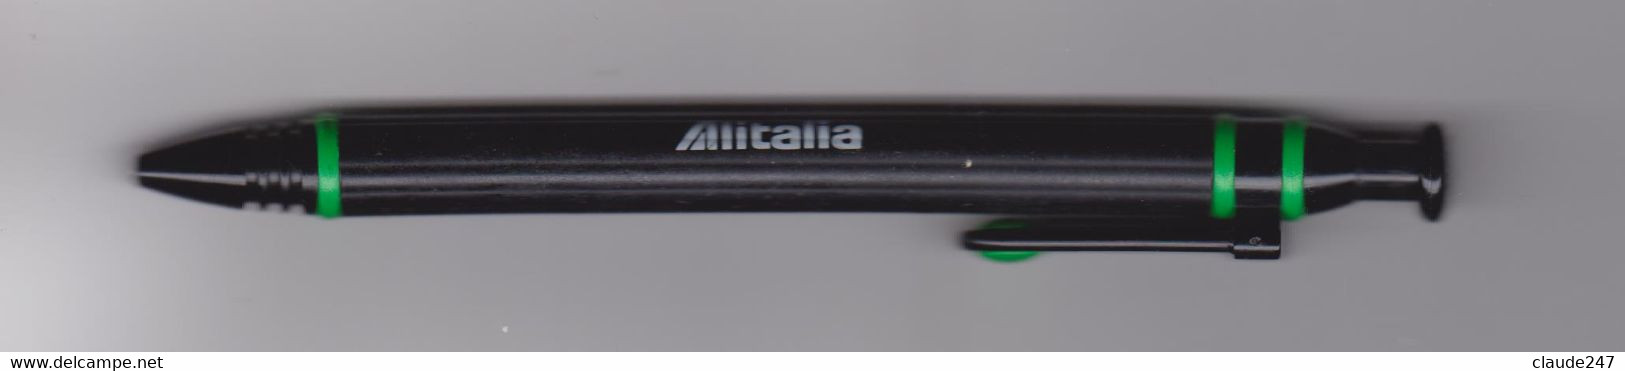 Alitalia Penna Biro Anni 1980/1990 - Materiale Promozionale